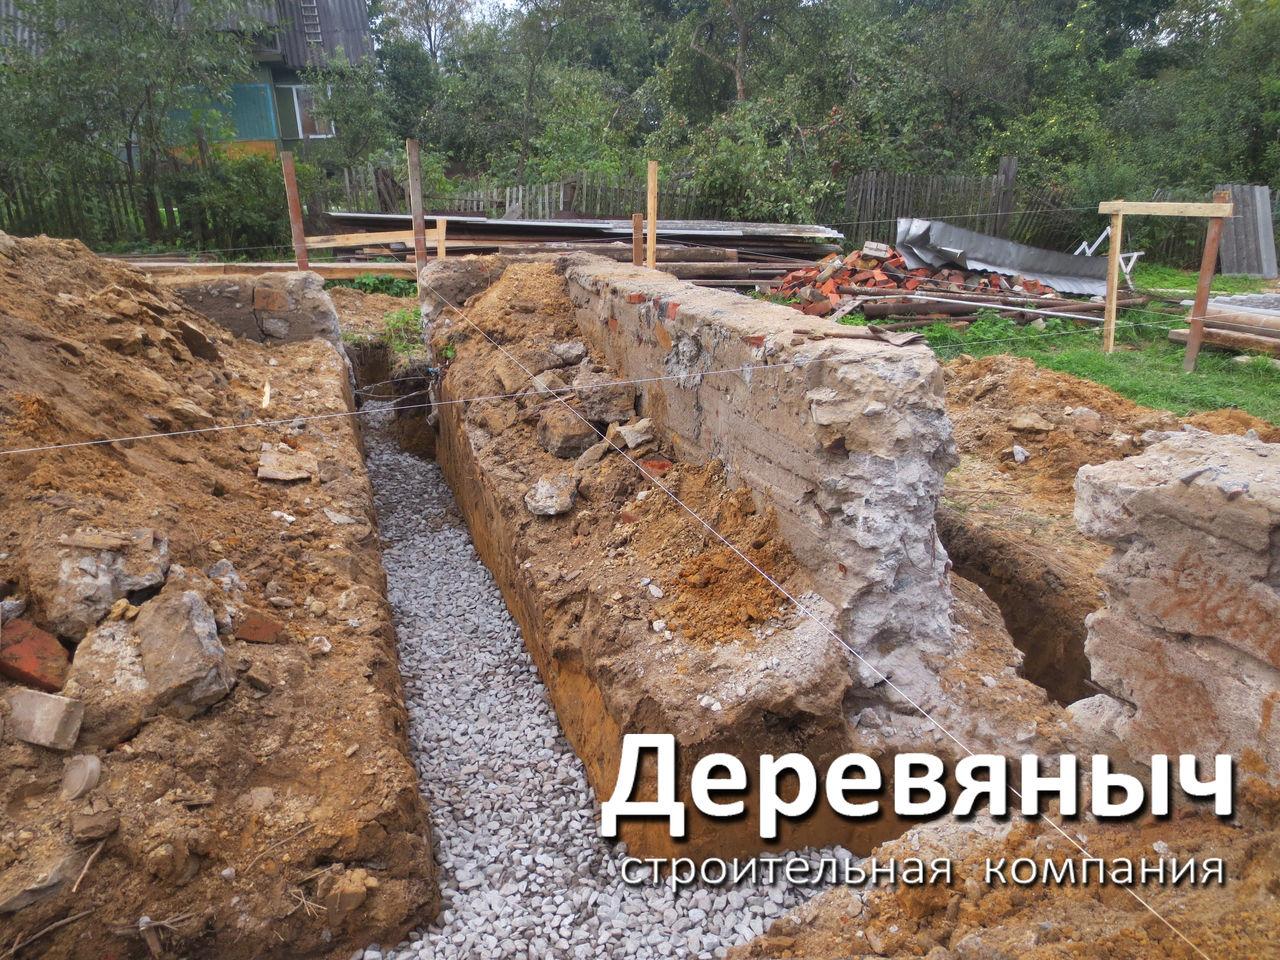 СК «Деревяныч» – строительство каркасных загородных домов – от разработки проекта до отделочных работ